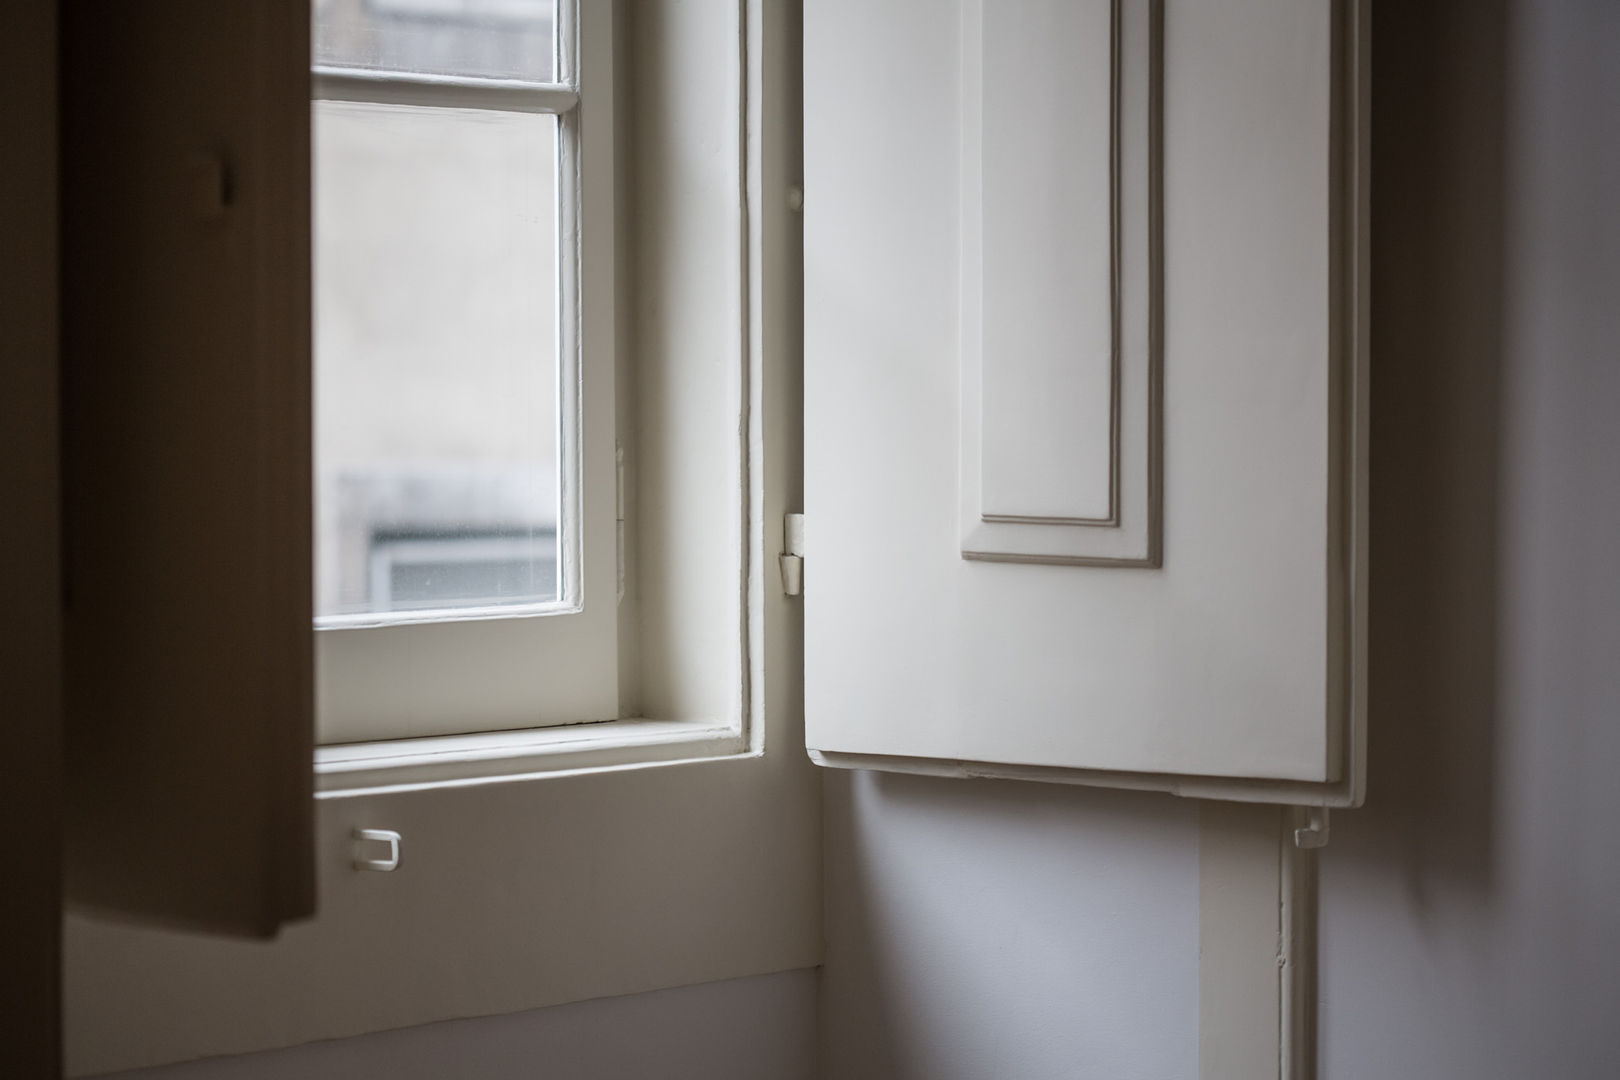 Reabilitação de apartamento pombalino, Architect Your Home Architect Your Home Puertas y ventanas de estilo clásico